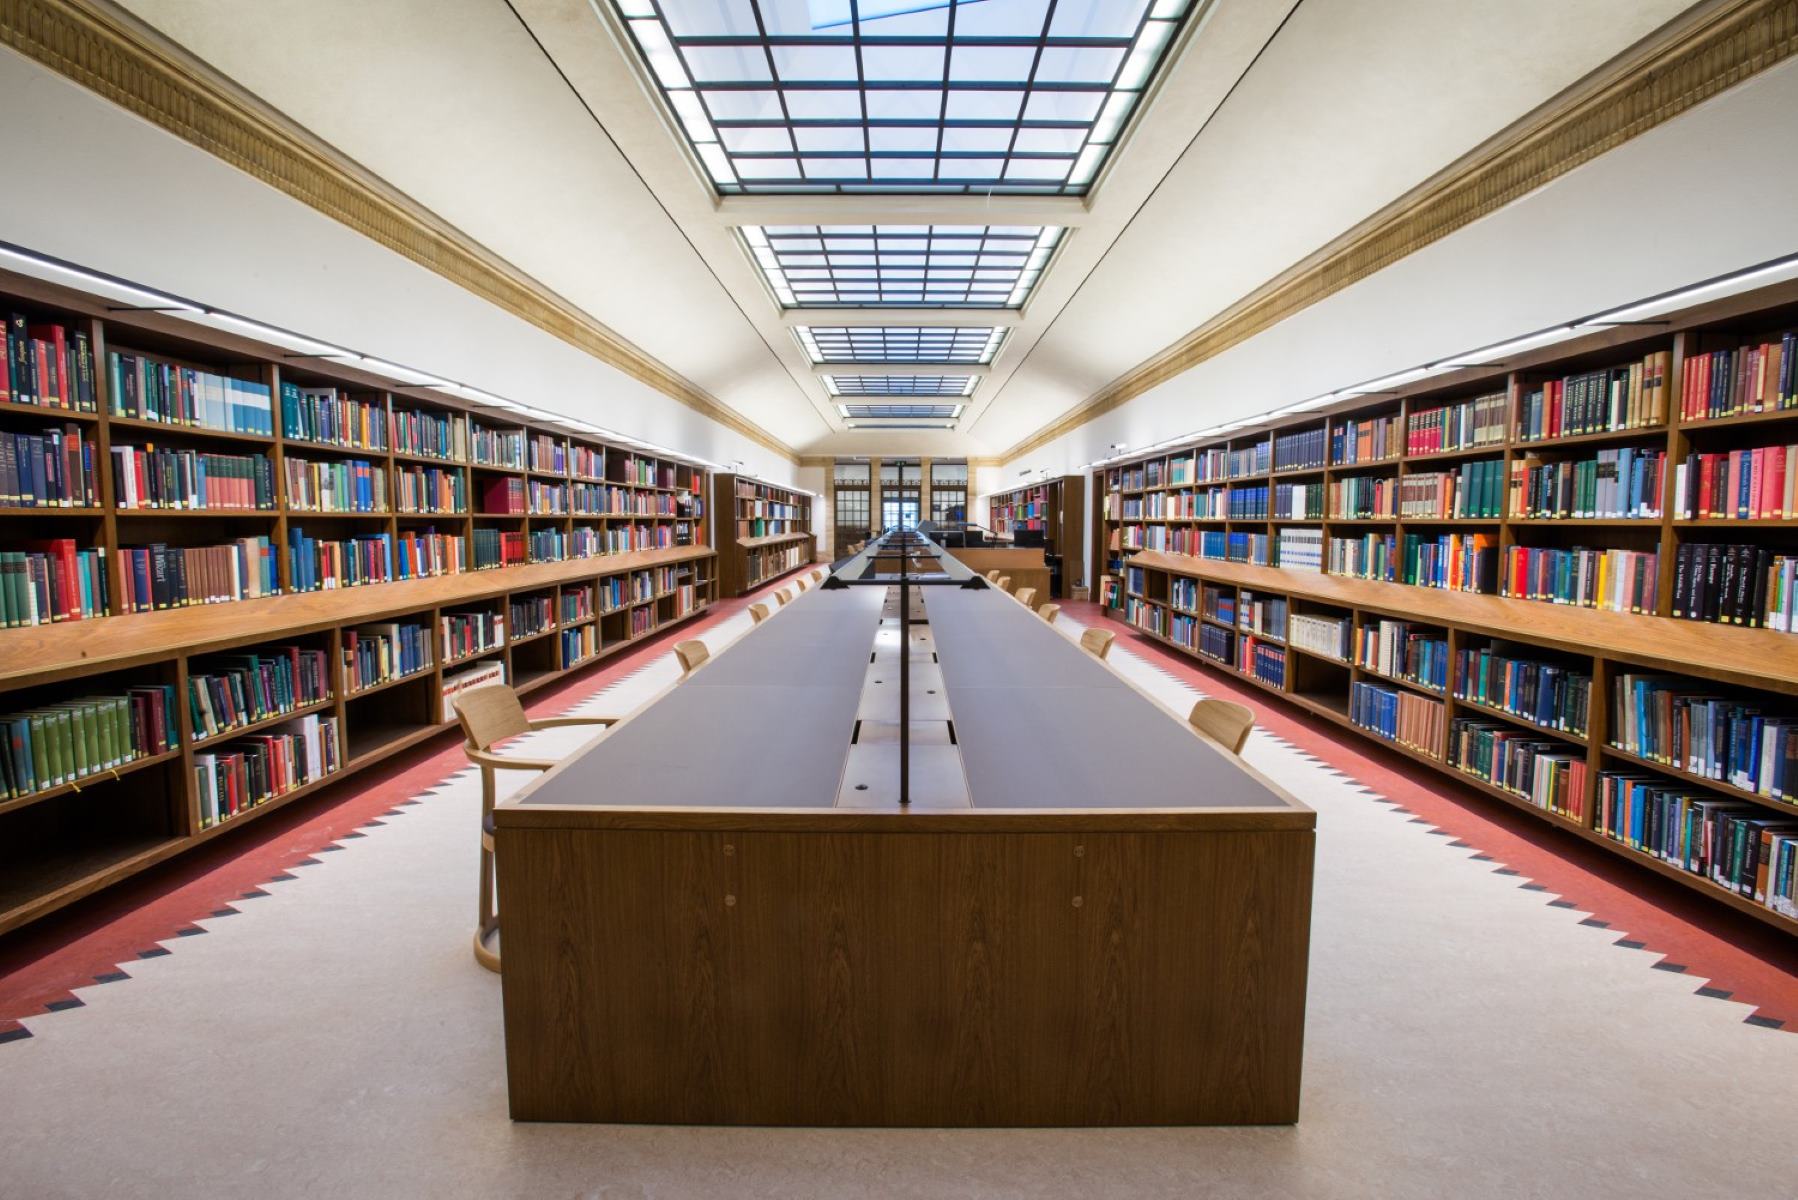 Compiled library. Оксфордский университет библиотека. Йельский университет библиотека. Красивая библиотека. Красивые читальные залы.